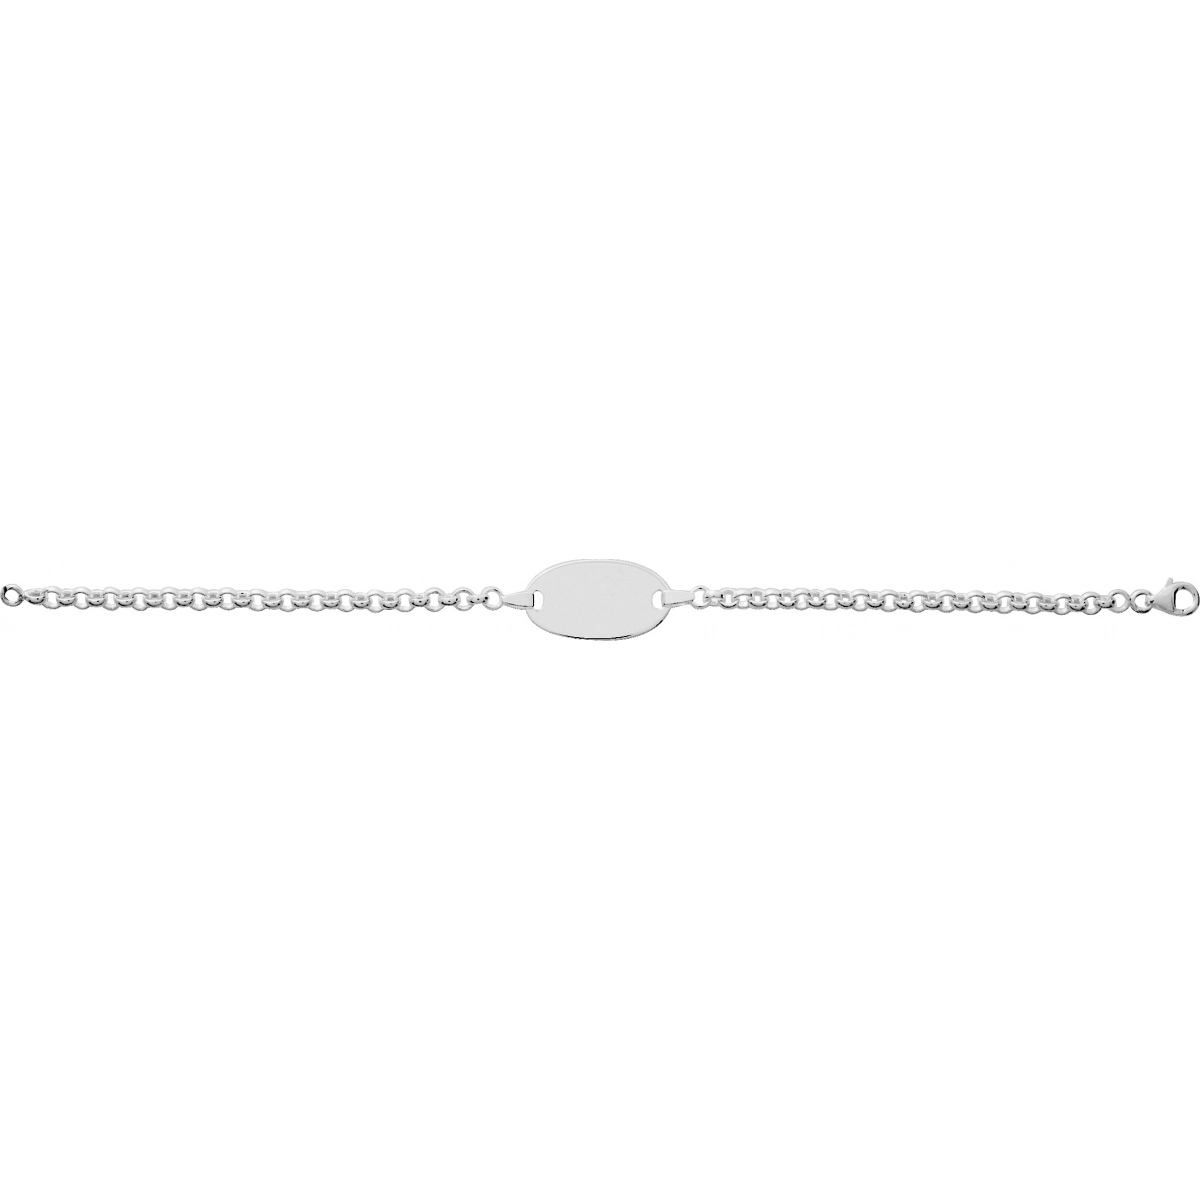 ID bracelet rh925 Silver - Size: 19  Lua Blanca  304109.00.19